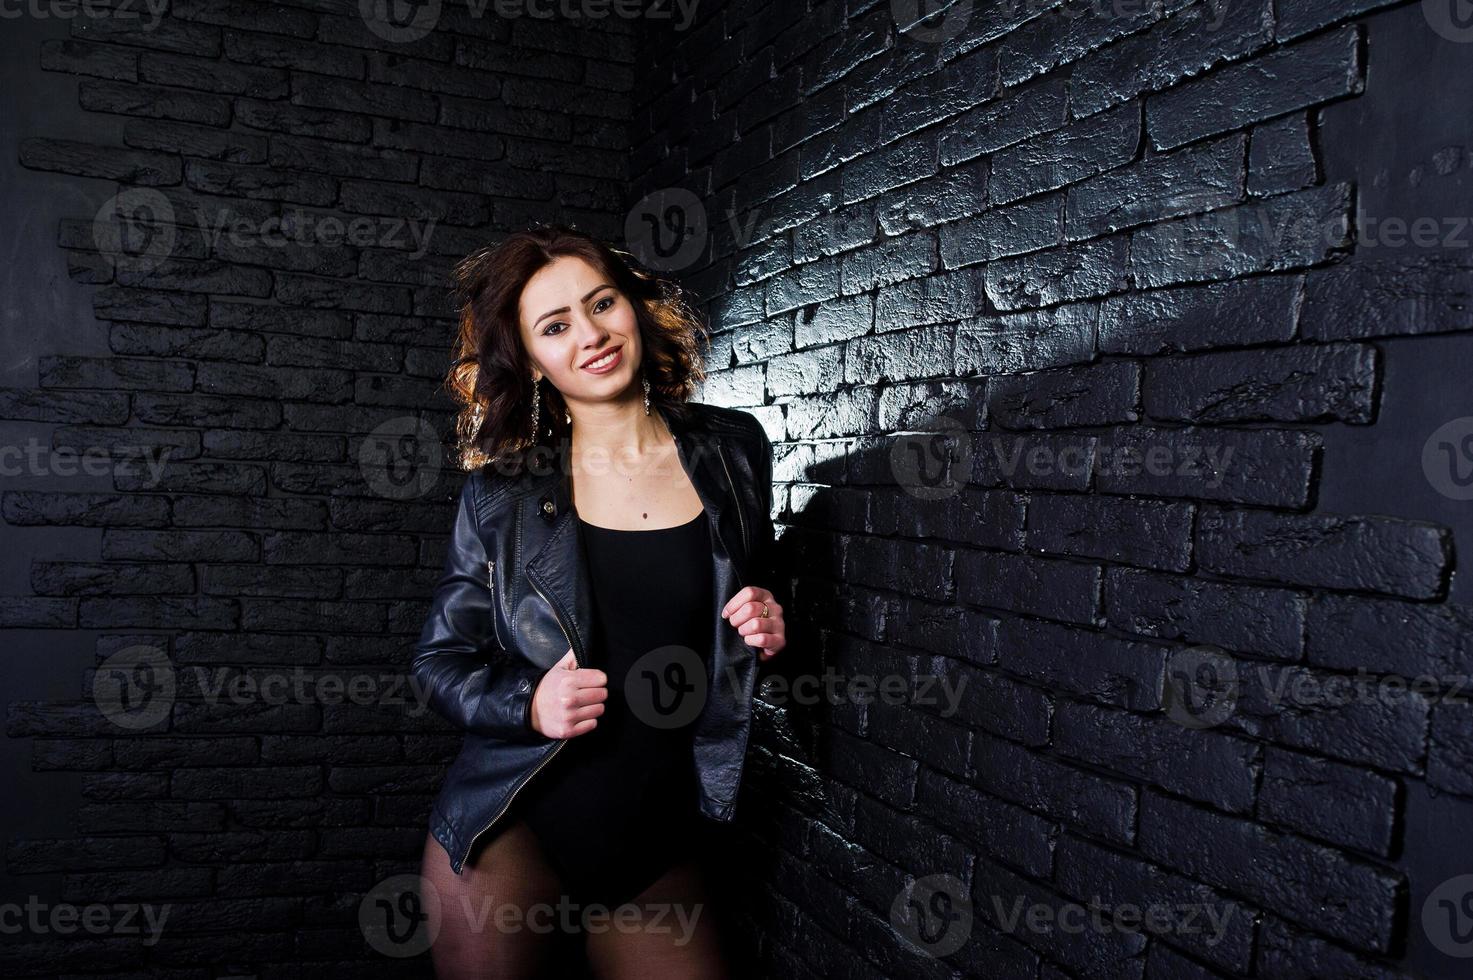 retrato de estudio de chica morena sexy en chaqueta de cuero negro contra la pared de ladrillo. foto